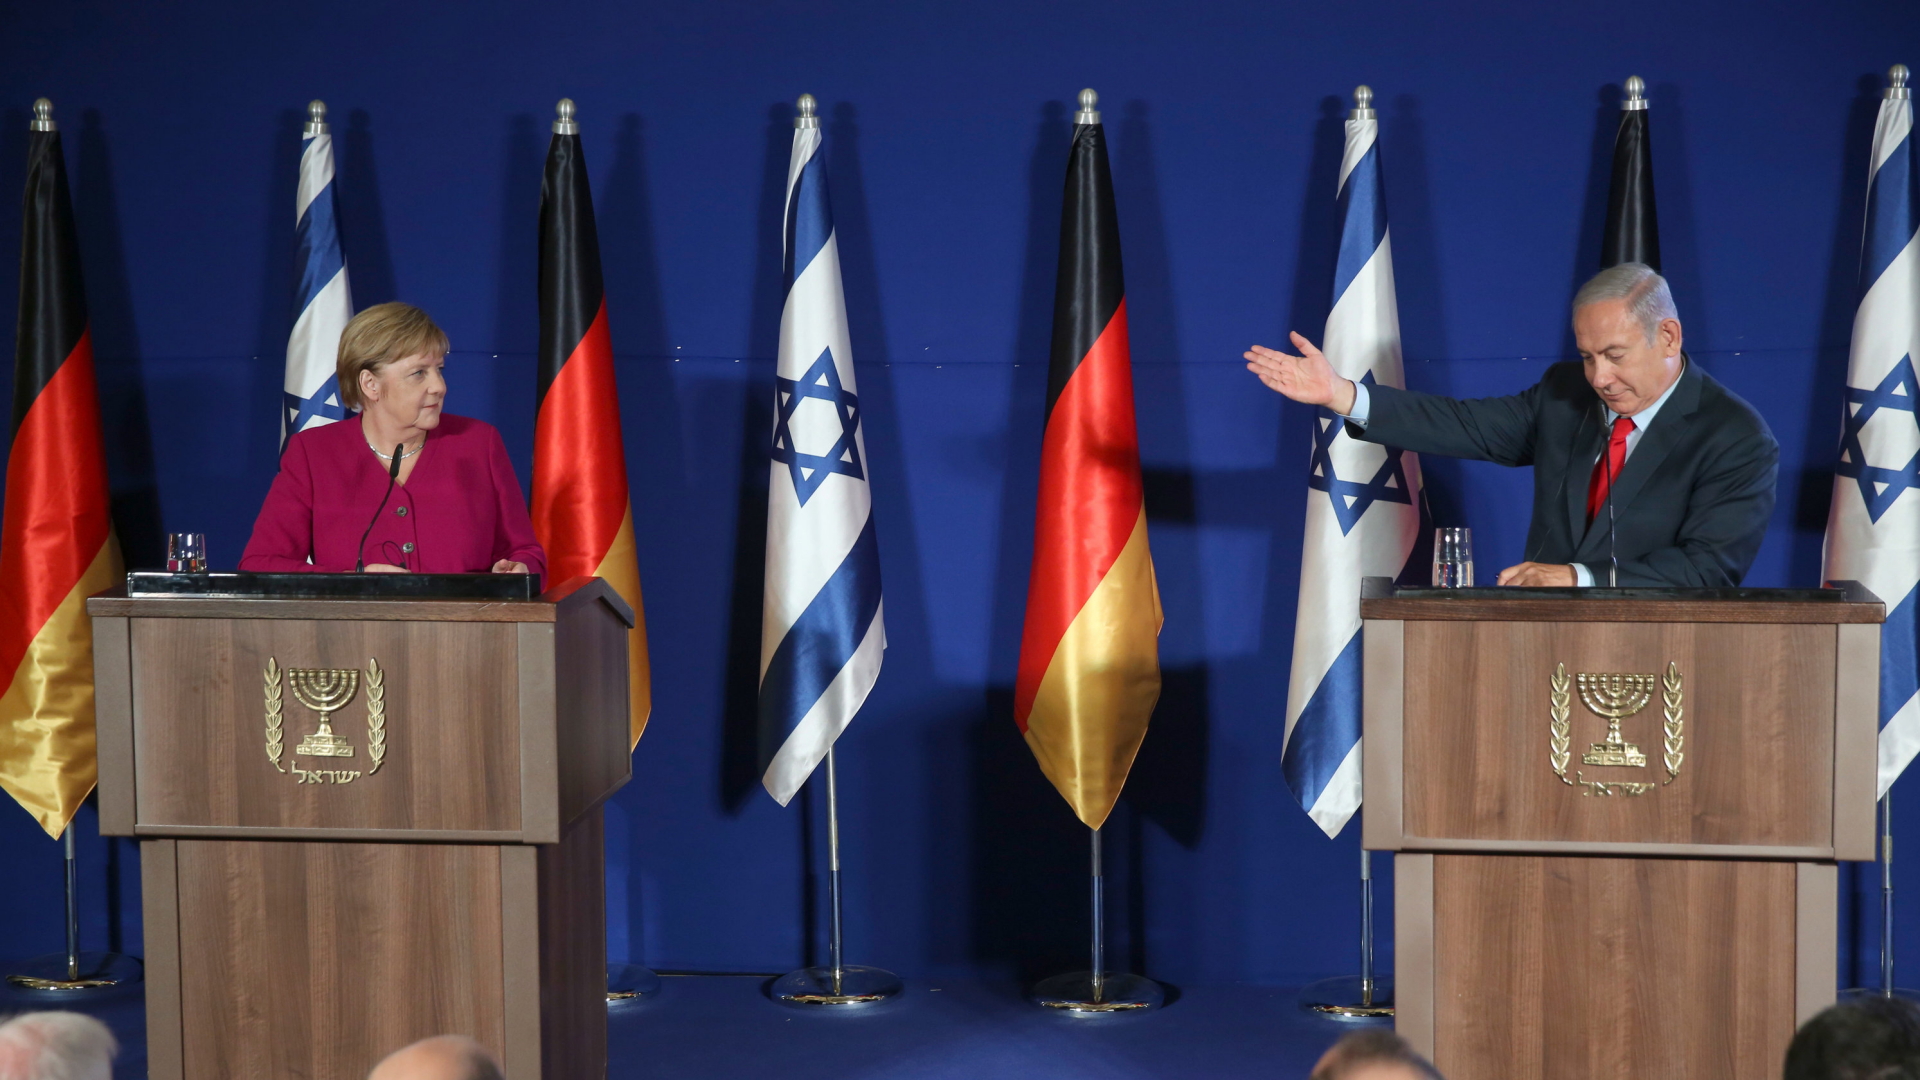 Angela Merkel und Benjamin Netanyahu bei einer Pressekonferenz in Israel. | Bildquelle: dpa